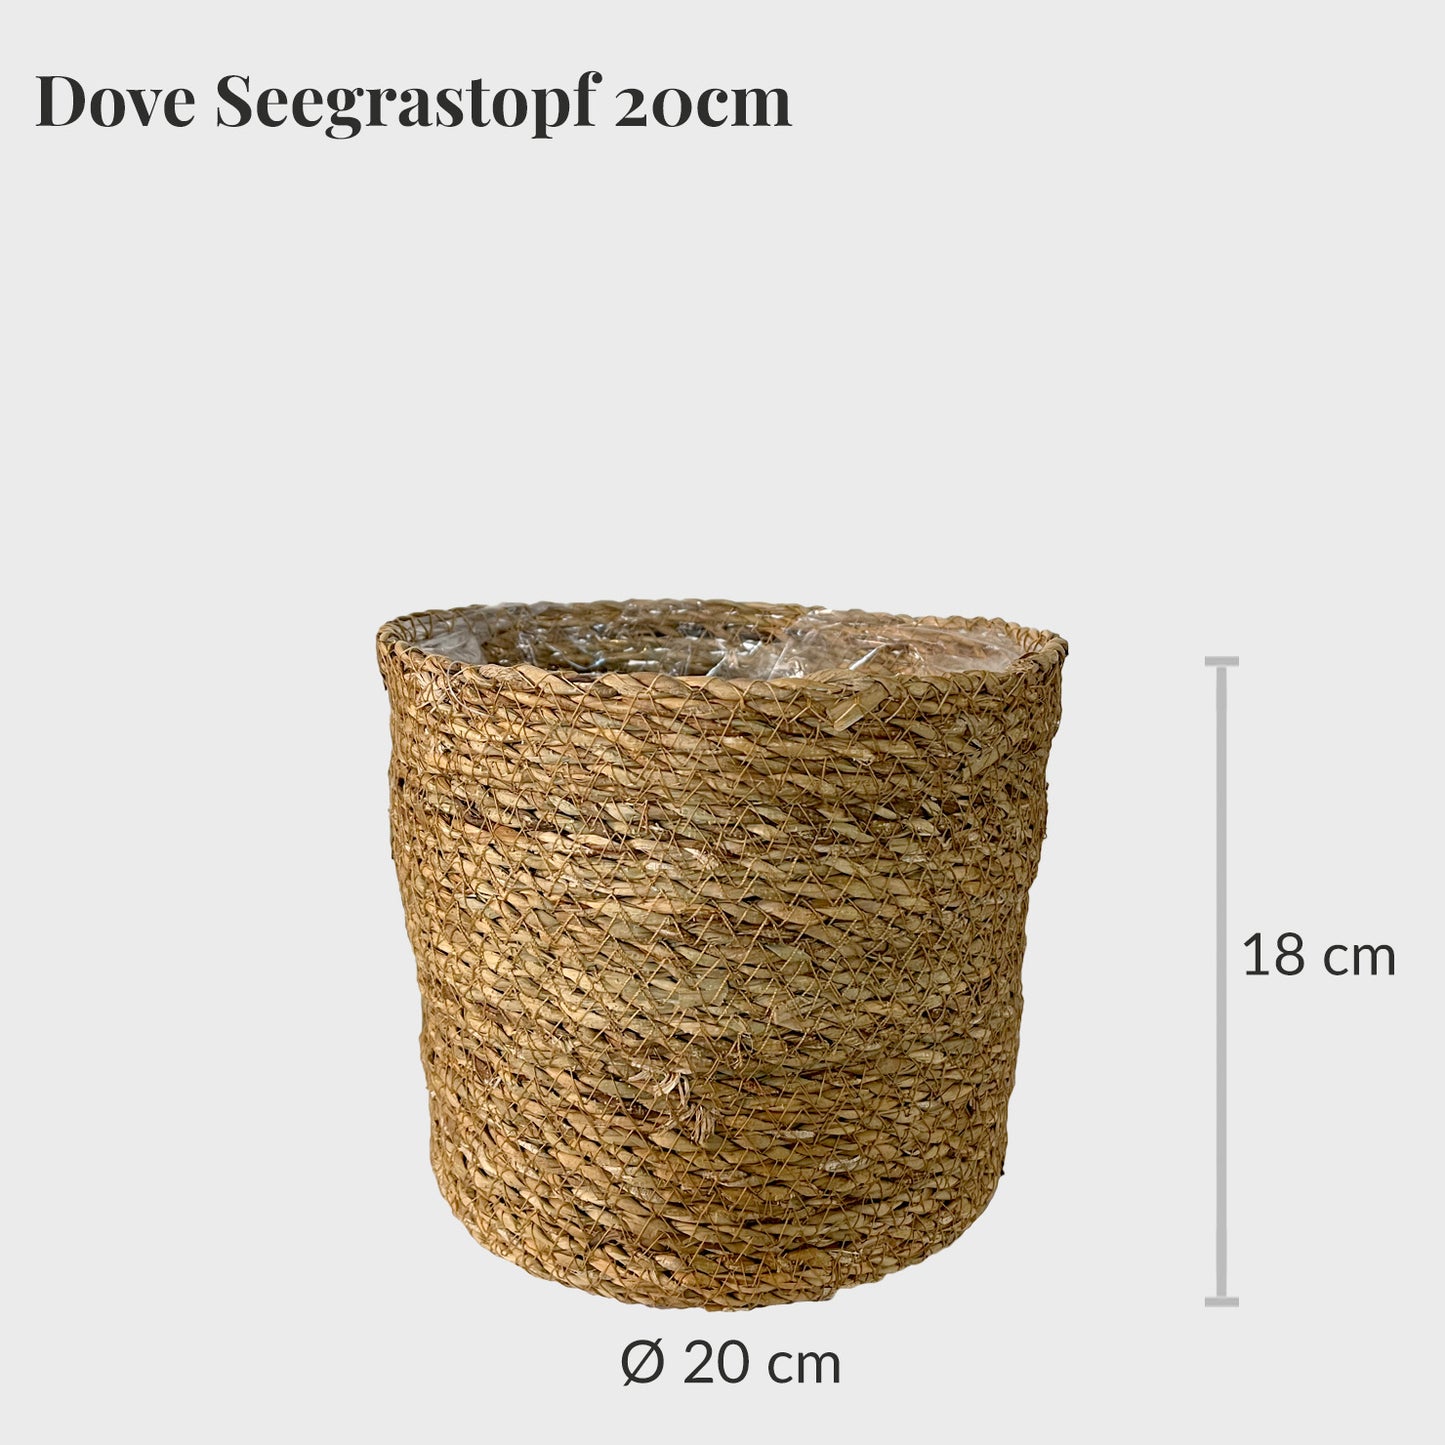 Dove Seegrastopf 20cm